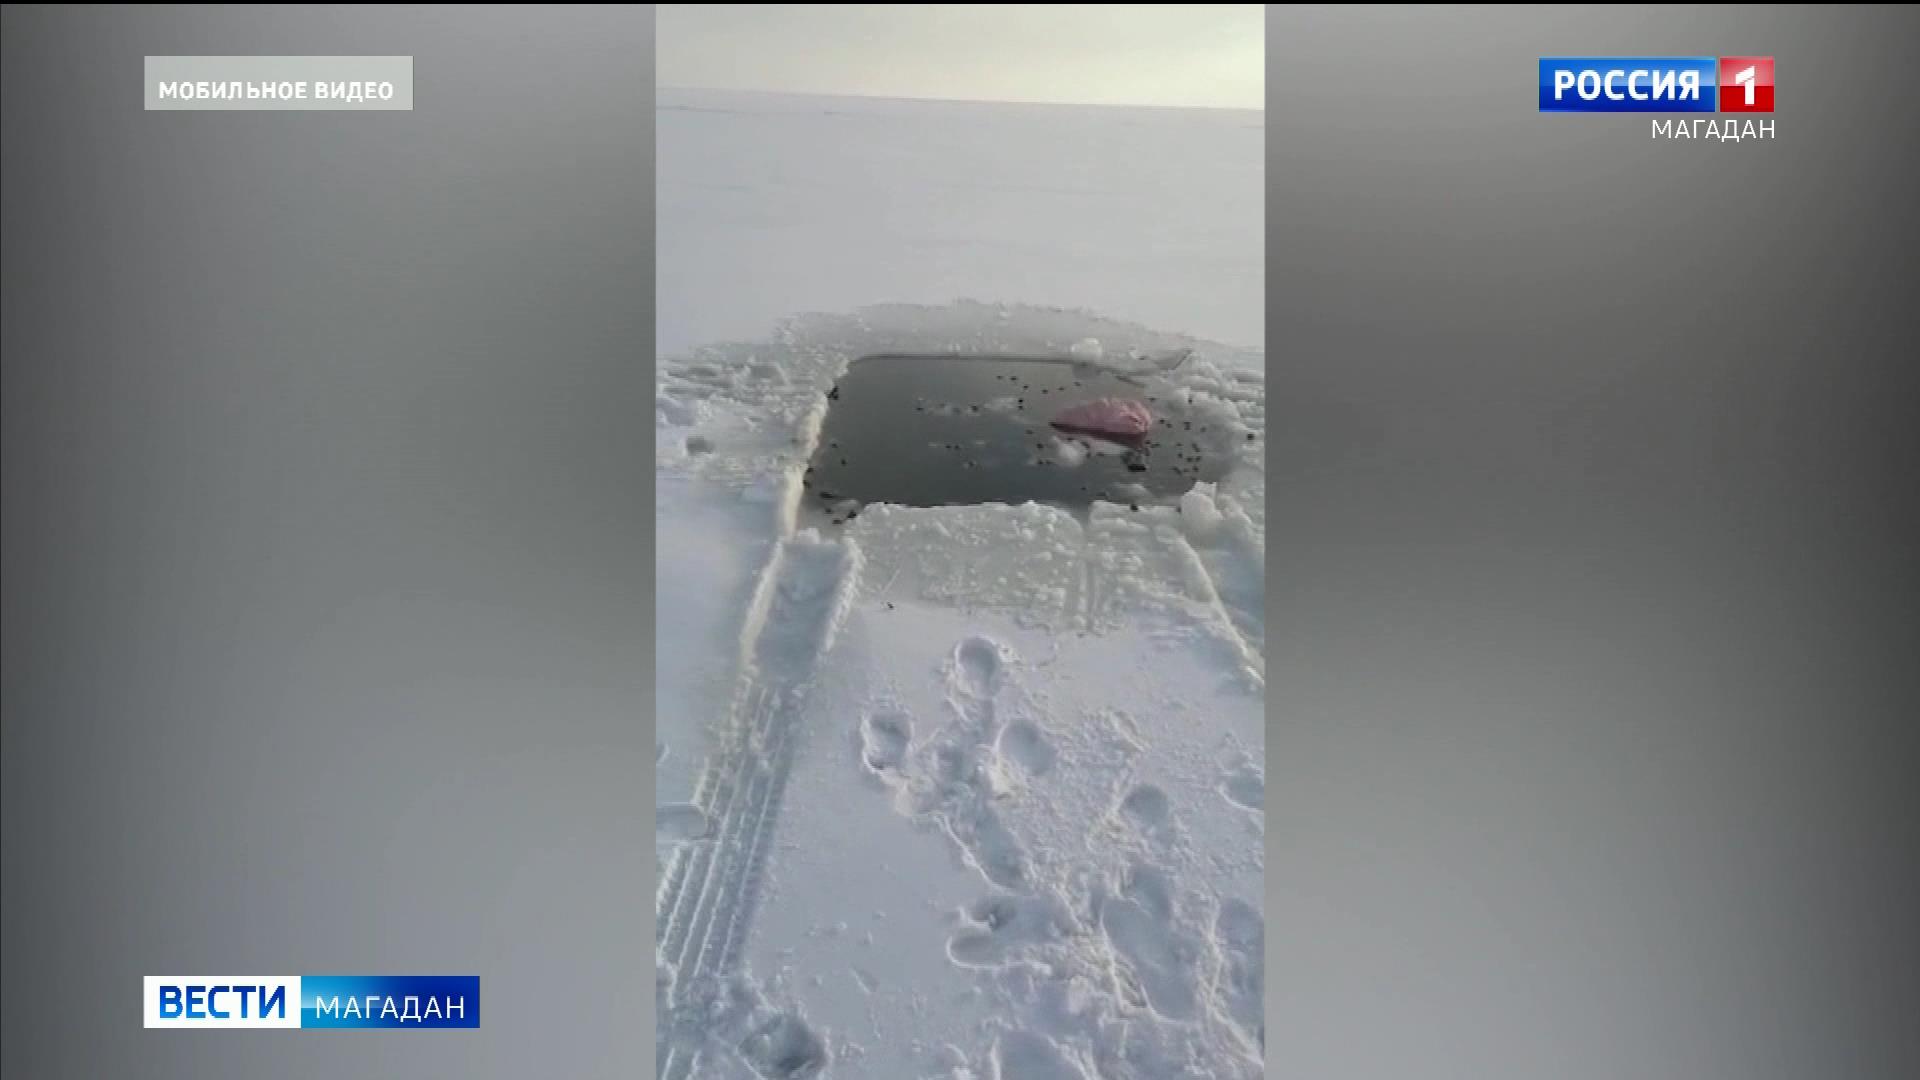 Автомобиль провалился под лед в бухте Гертнера в Магадане